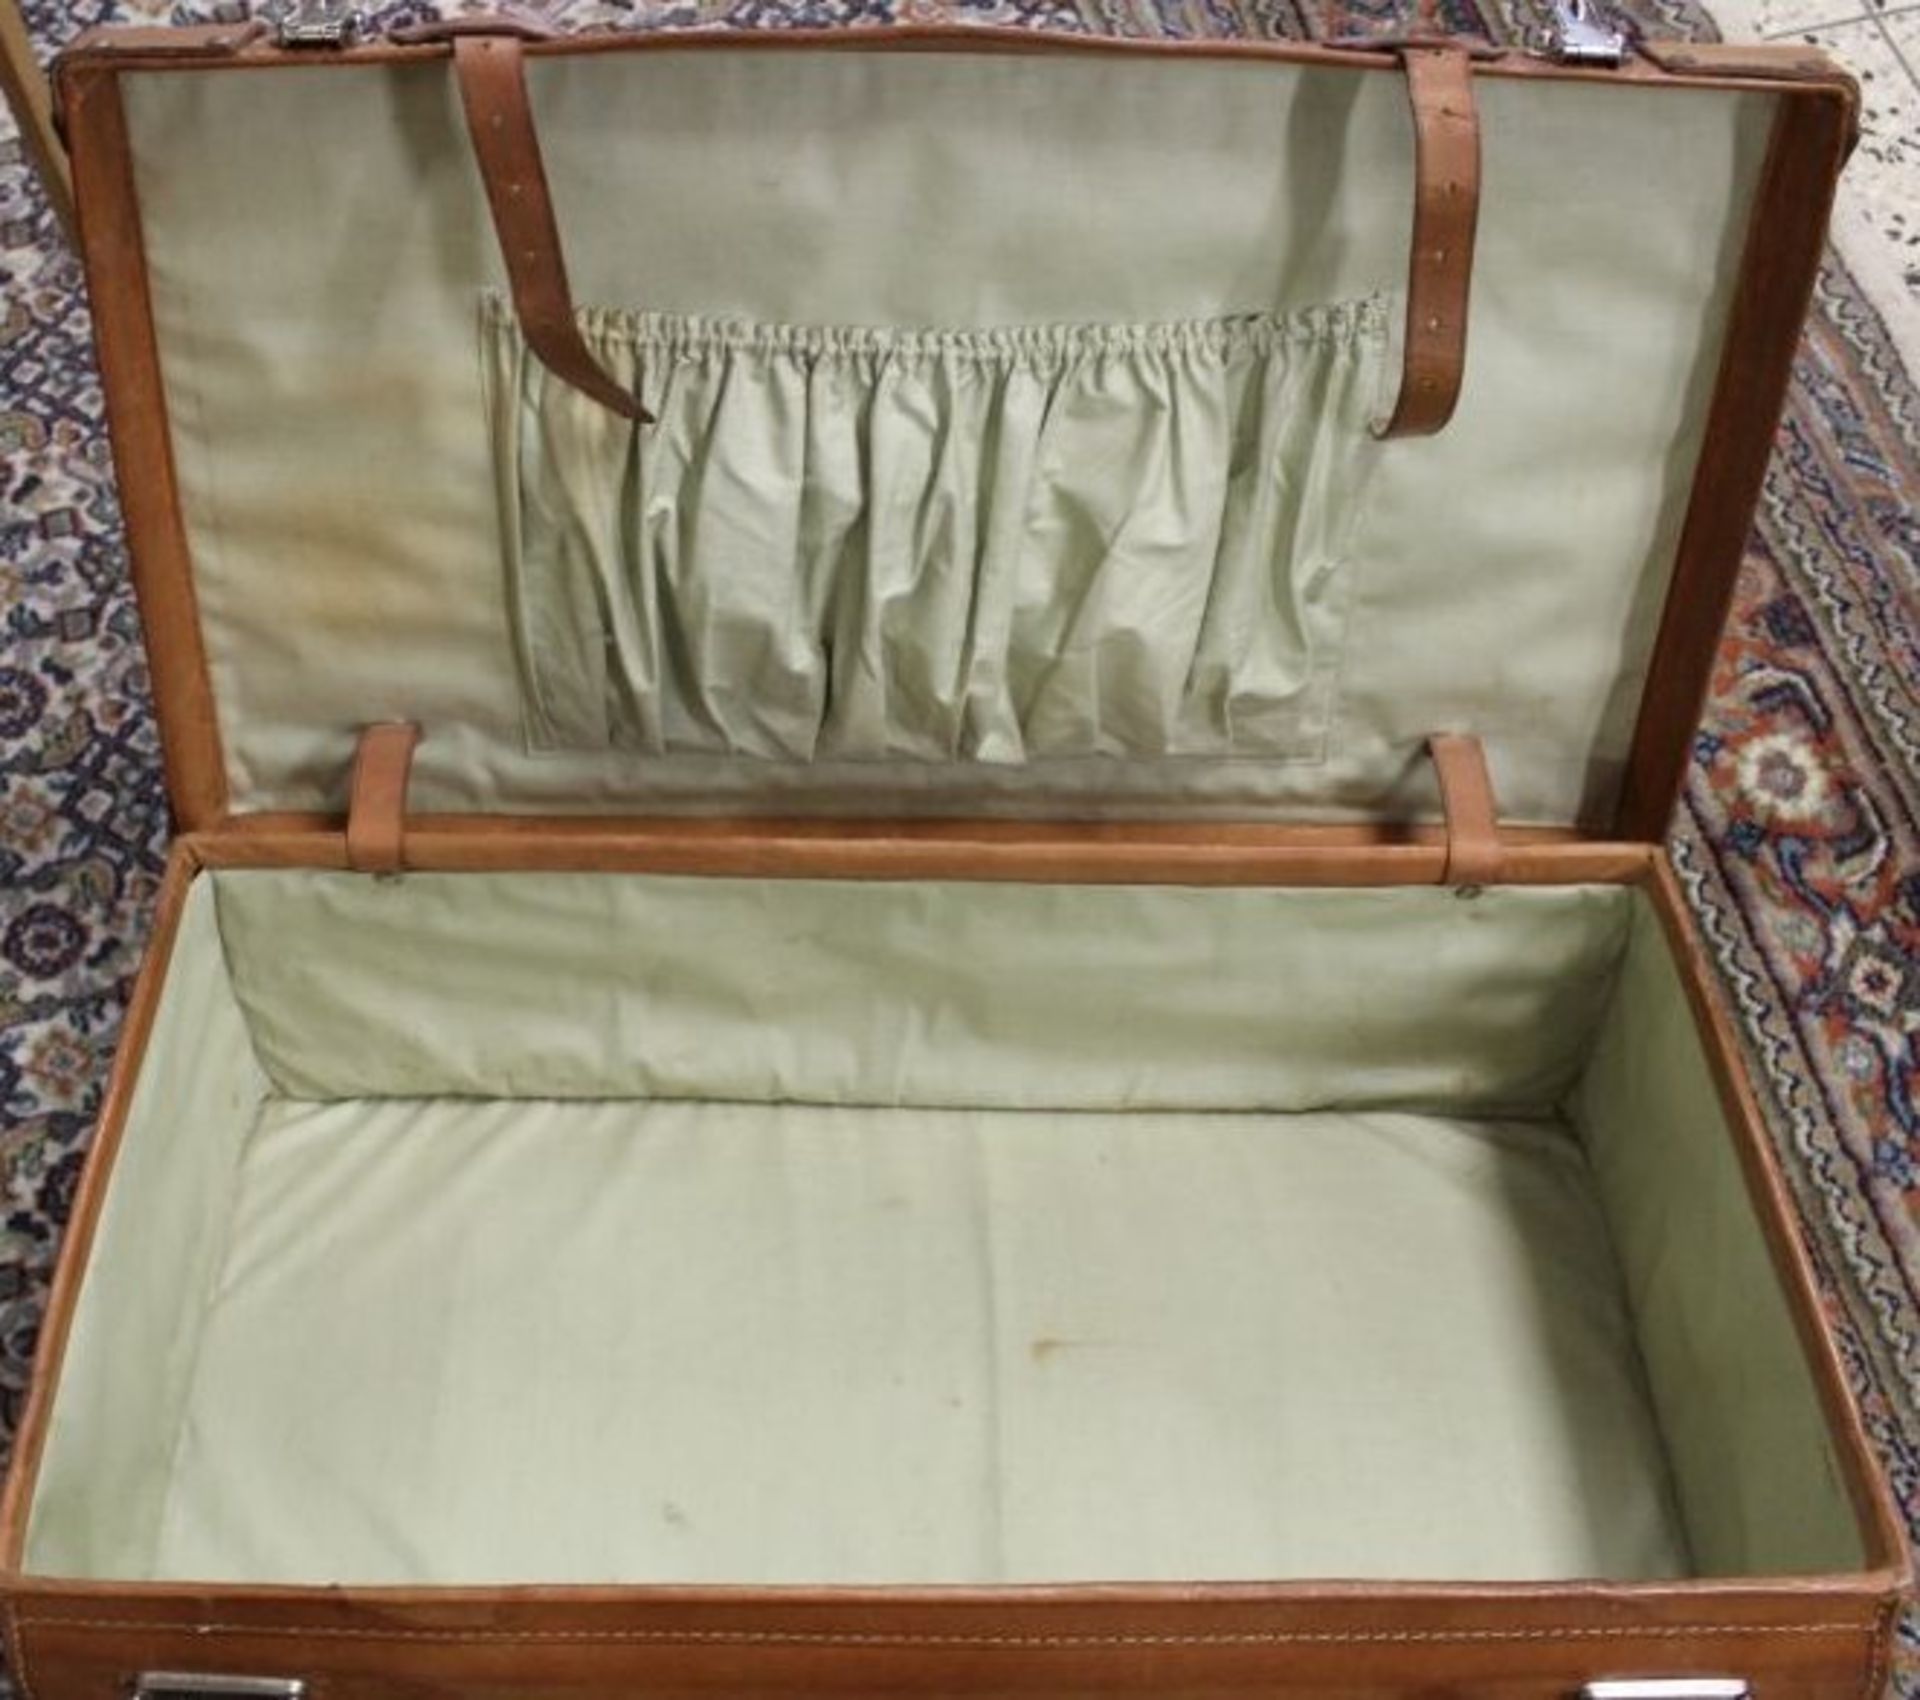 Leder-Koffer, älter, leichte Gebrauchsspuren, ca. H-21cm B-70cm - Bild 2 aus 2